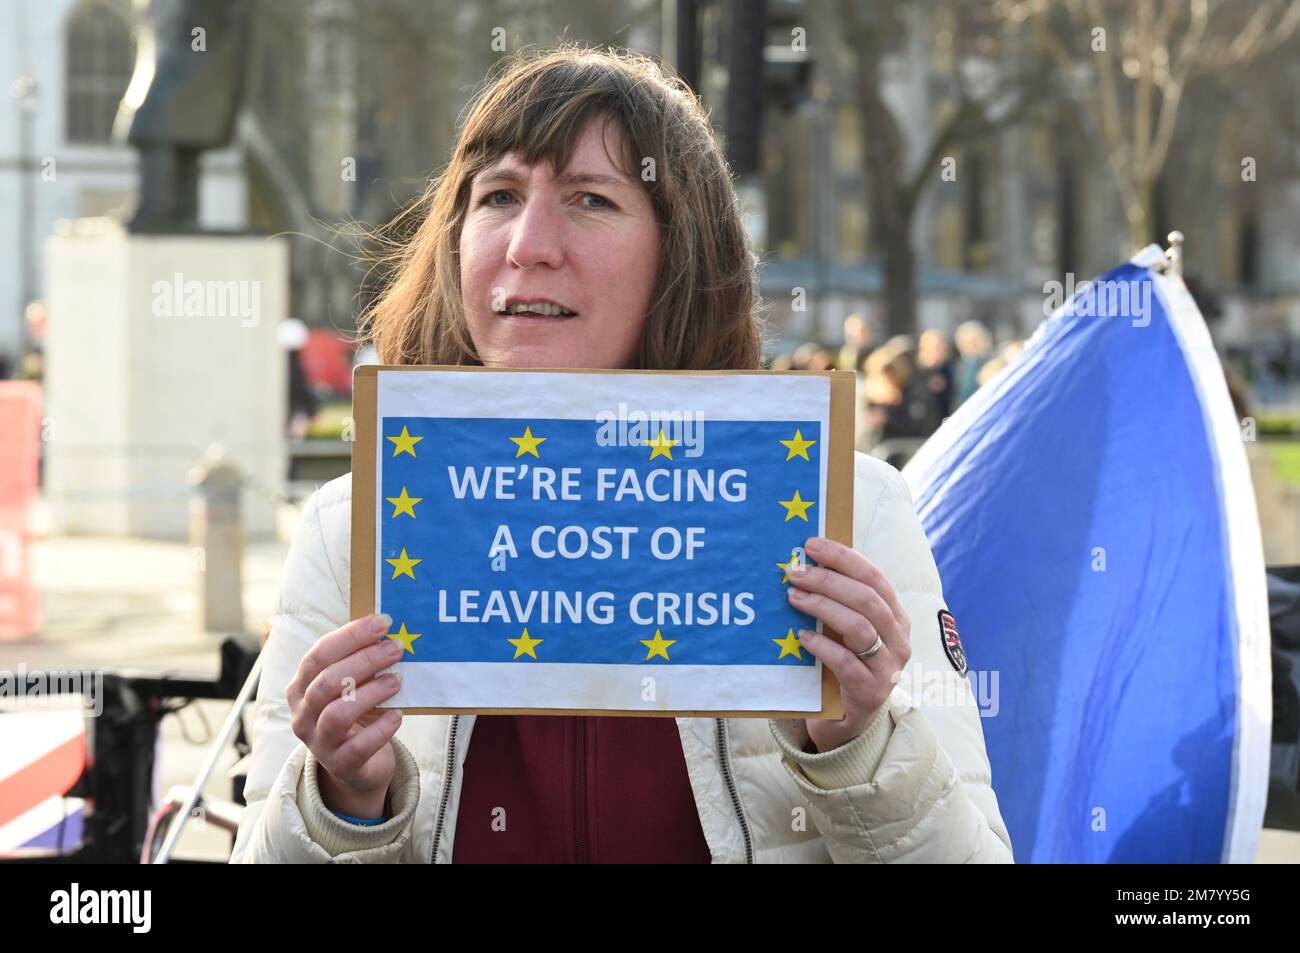 Londra, Regno Unito. Gli attivisti hanno manifestato contro il governo conservatore e il costo della Brexit. Piazza del Parlamento, Westminster. Foto Stock